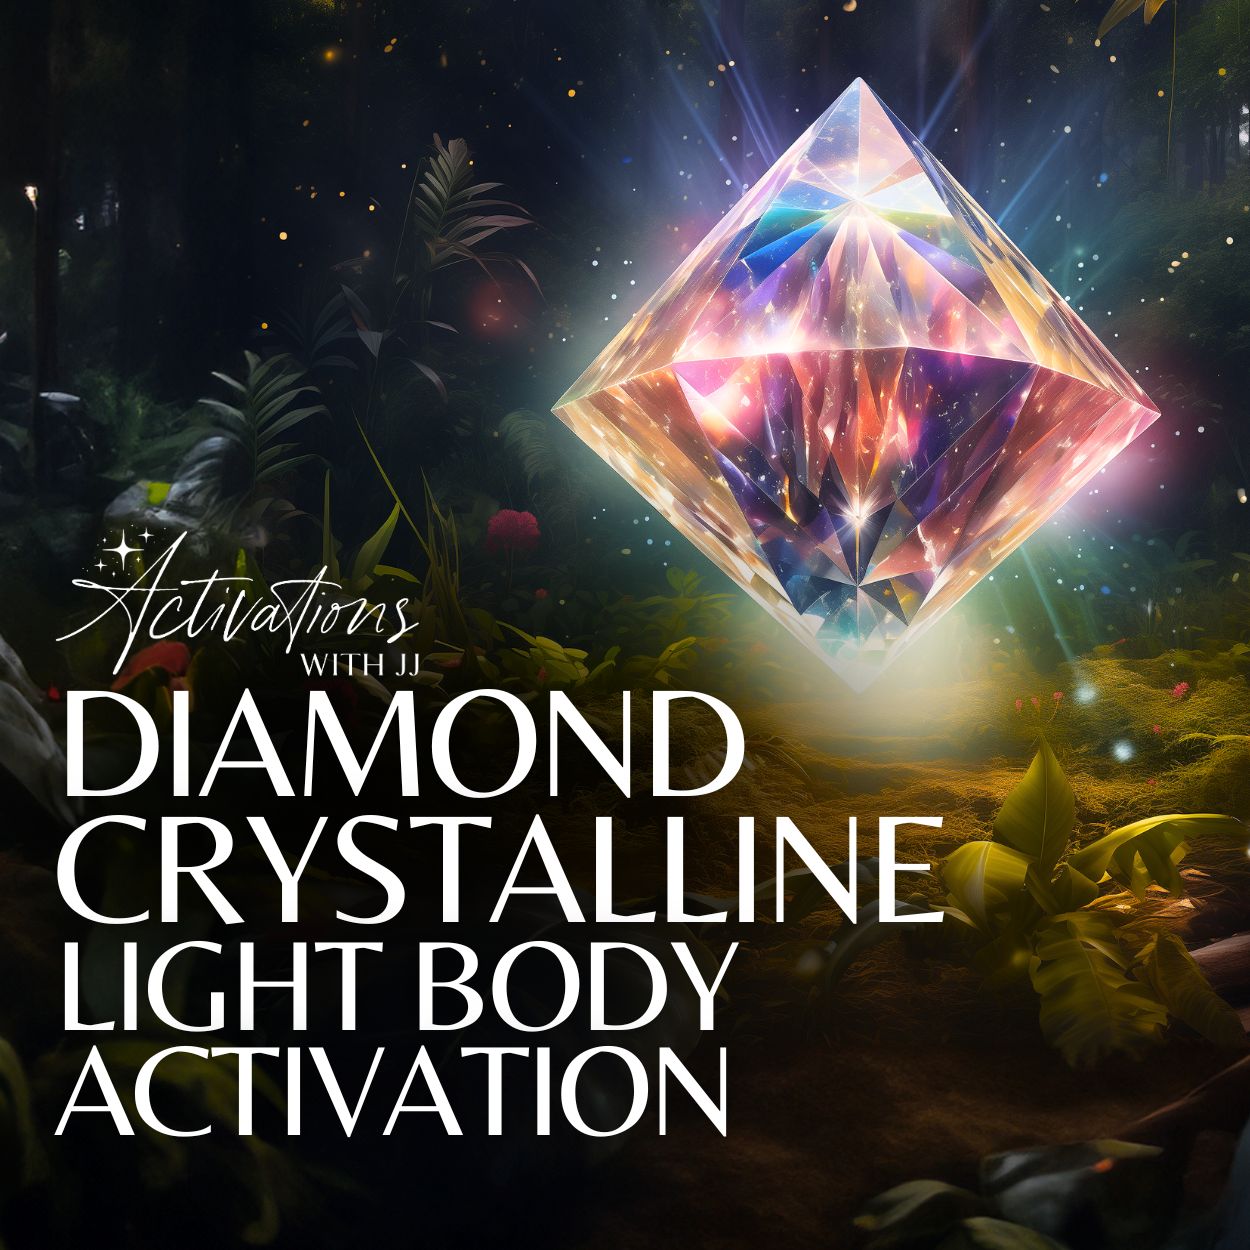 Diamond Crystalline Light Body Activation